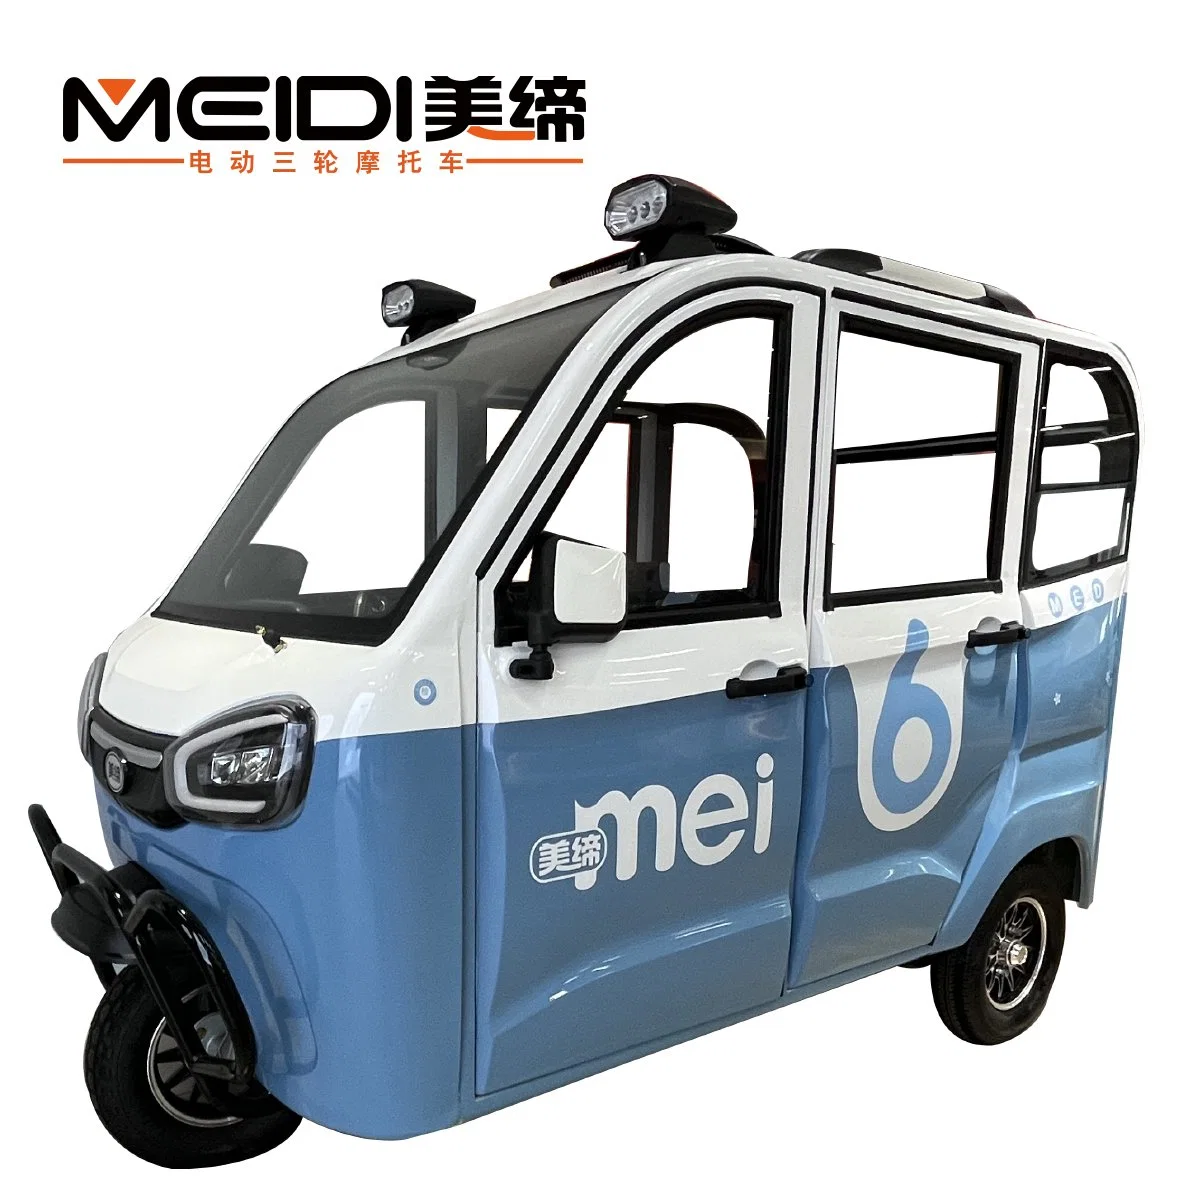 Питание от аккумулятора Meidi 1200 Вт 1500 Вт 1800 Вт, автоматический режим работы от аккумулятора Rickshaw Закрытый электрический трехколесный цикл